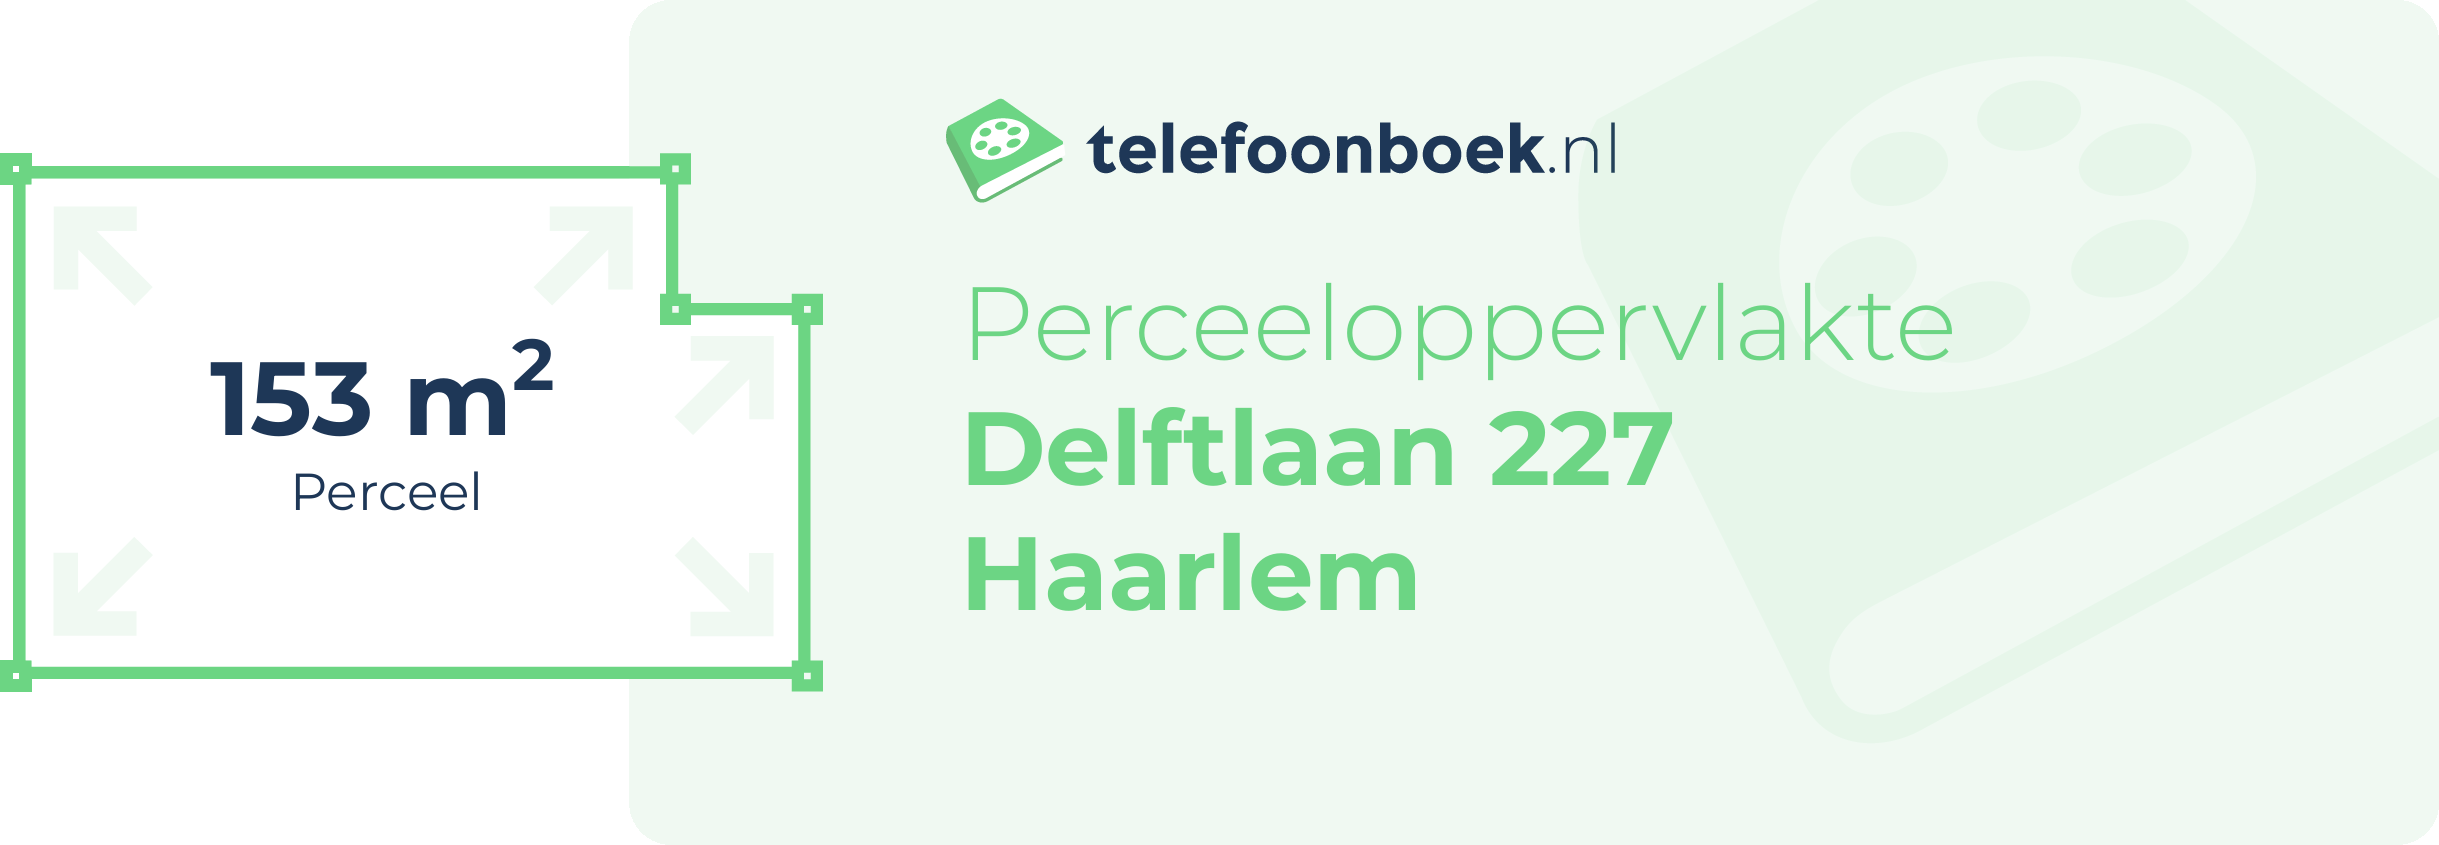 Perceeloppervlakte Delftlaan 227 Haarlem